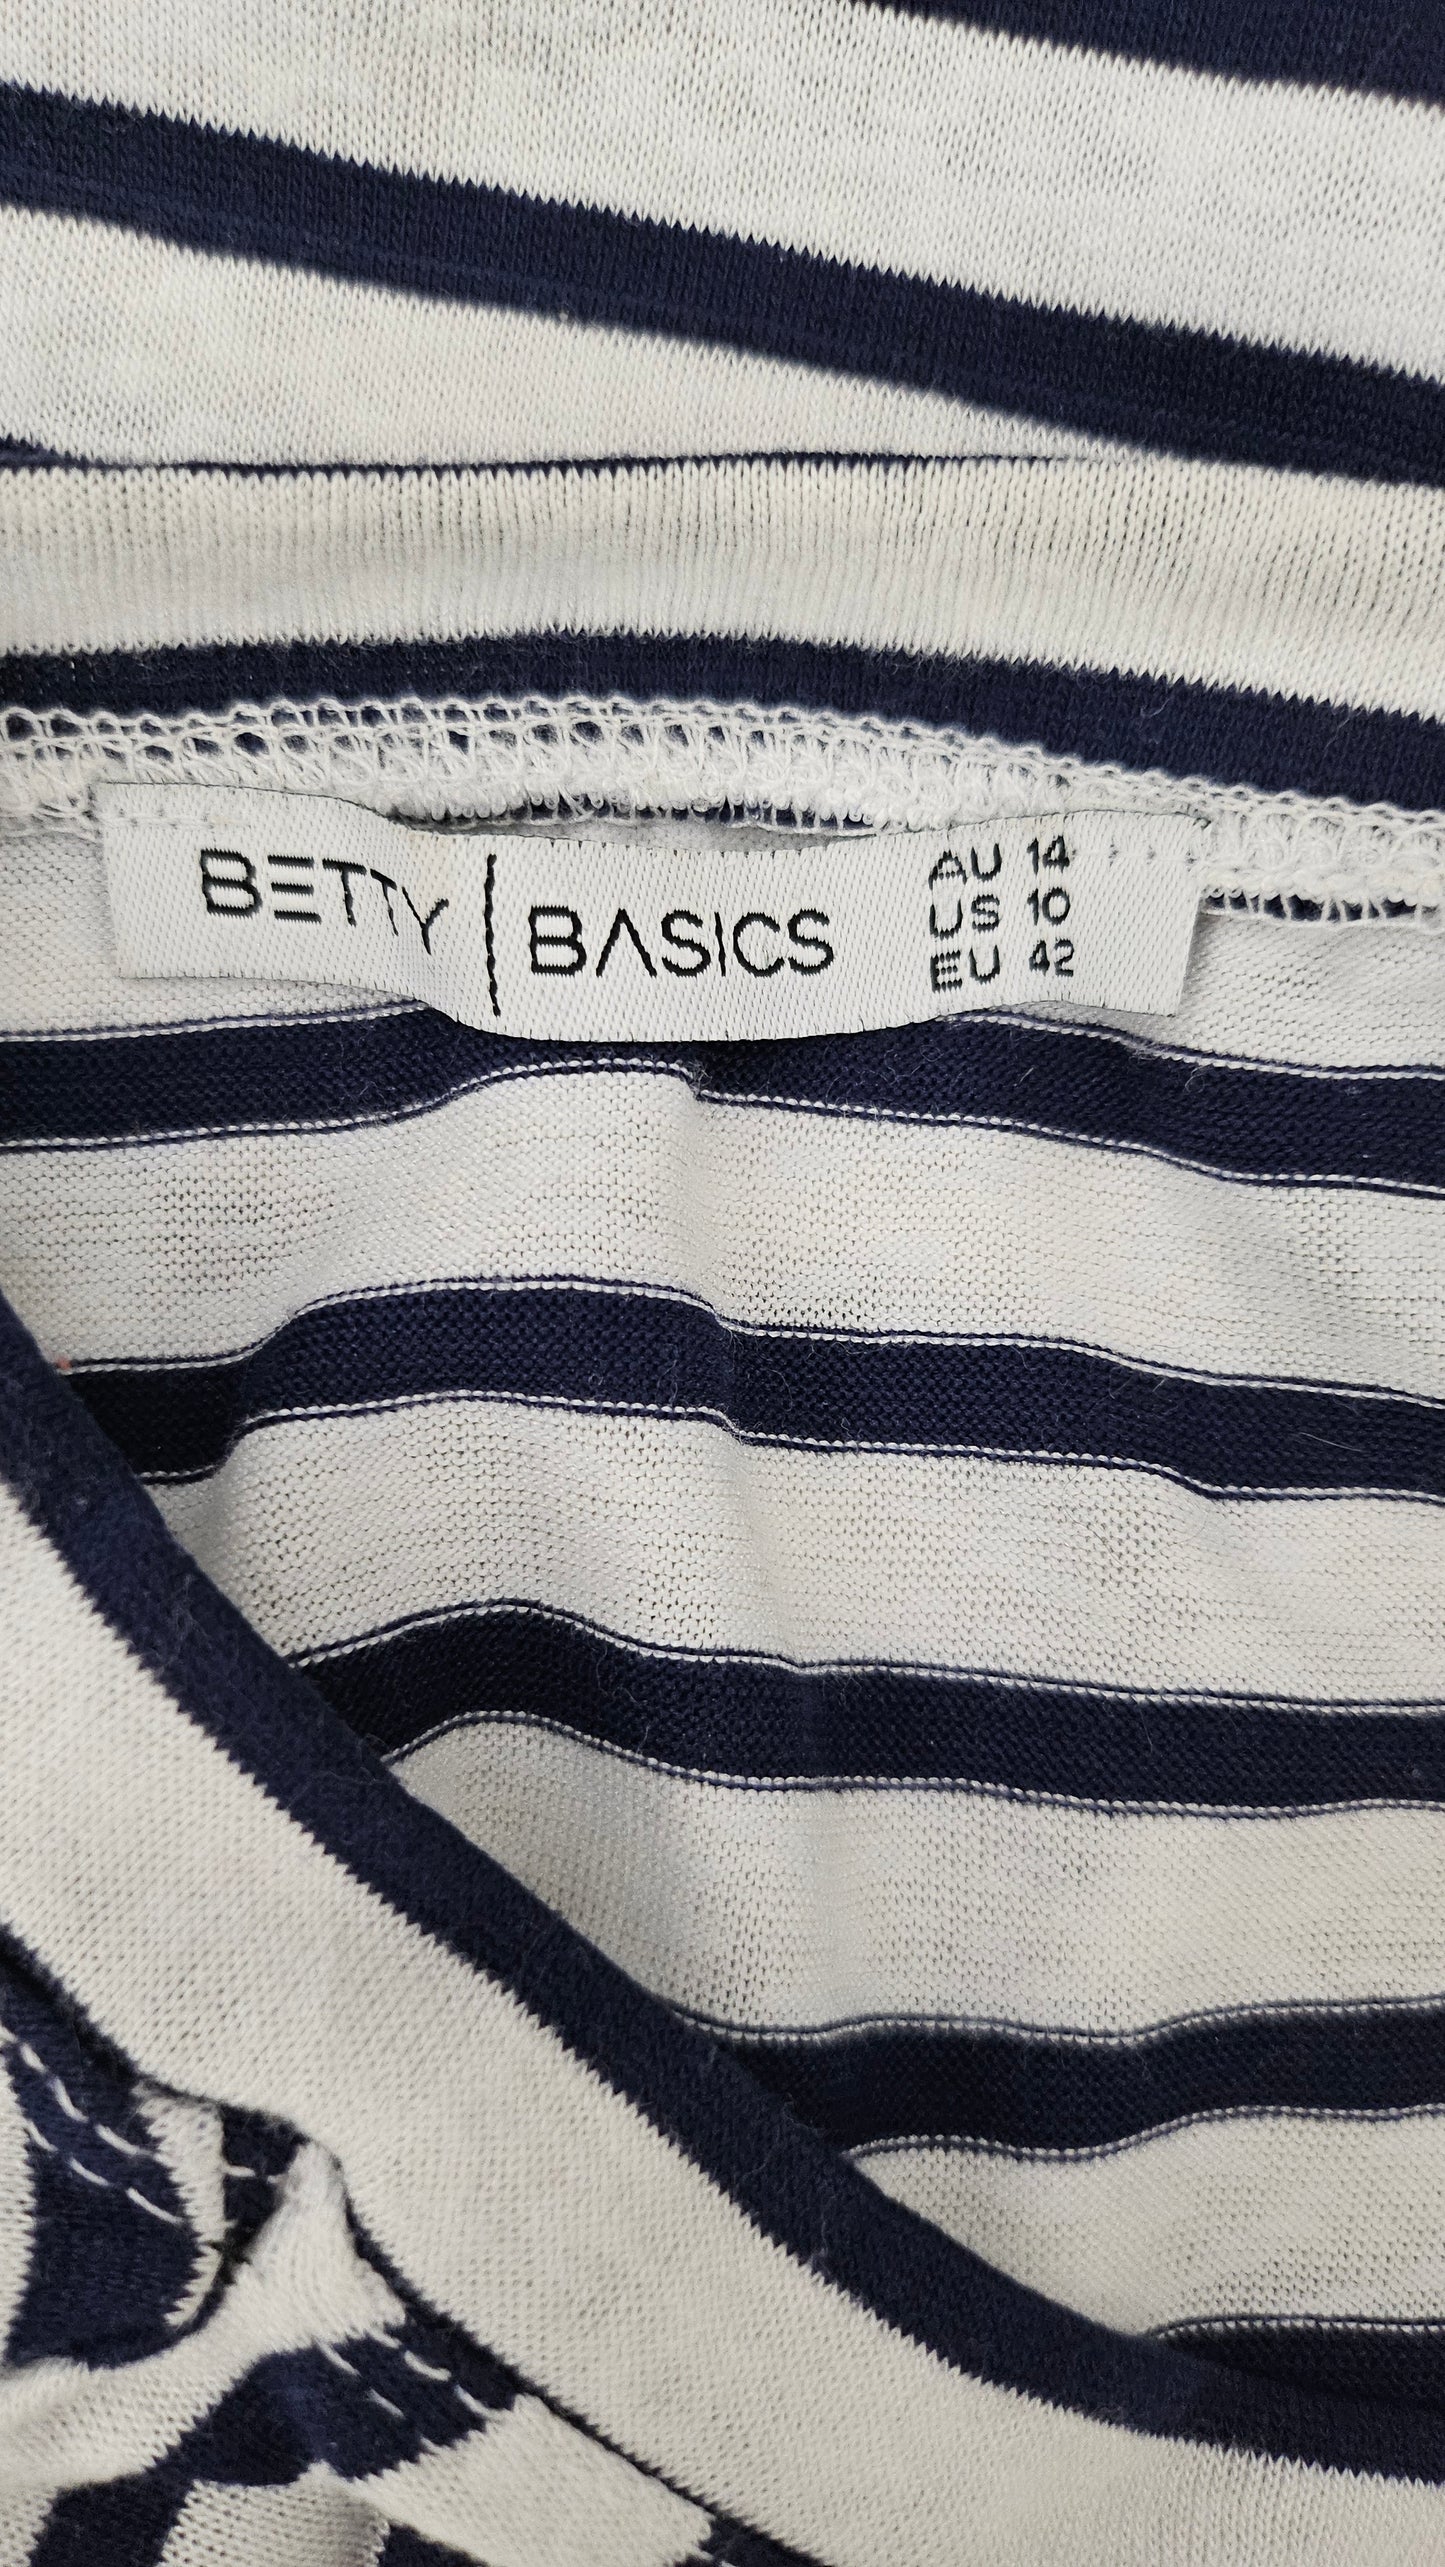 Betty Basics Navy/White Striped Hem Twist Tops (14)